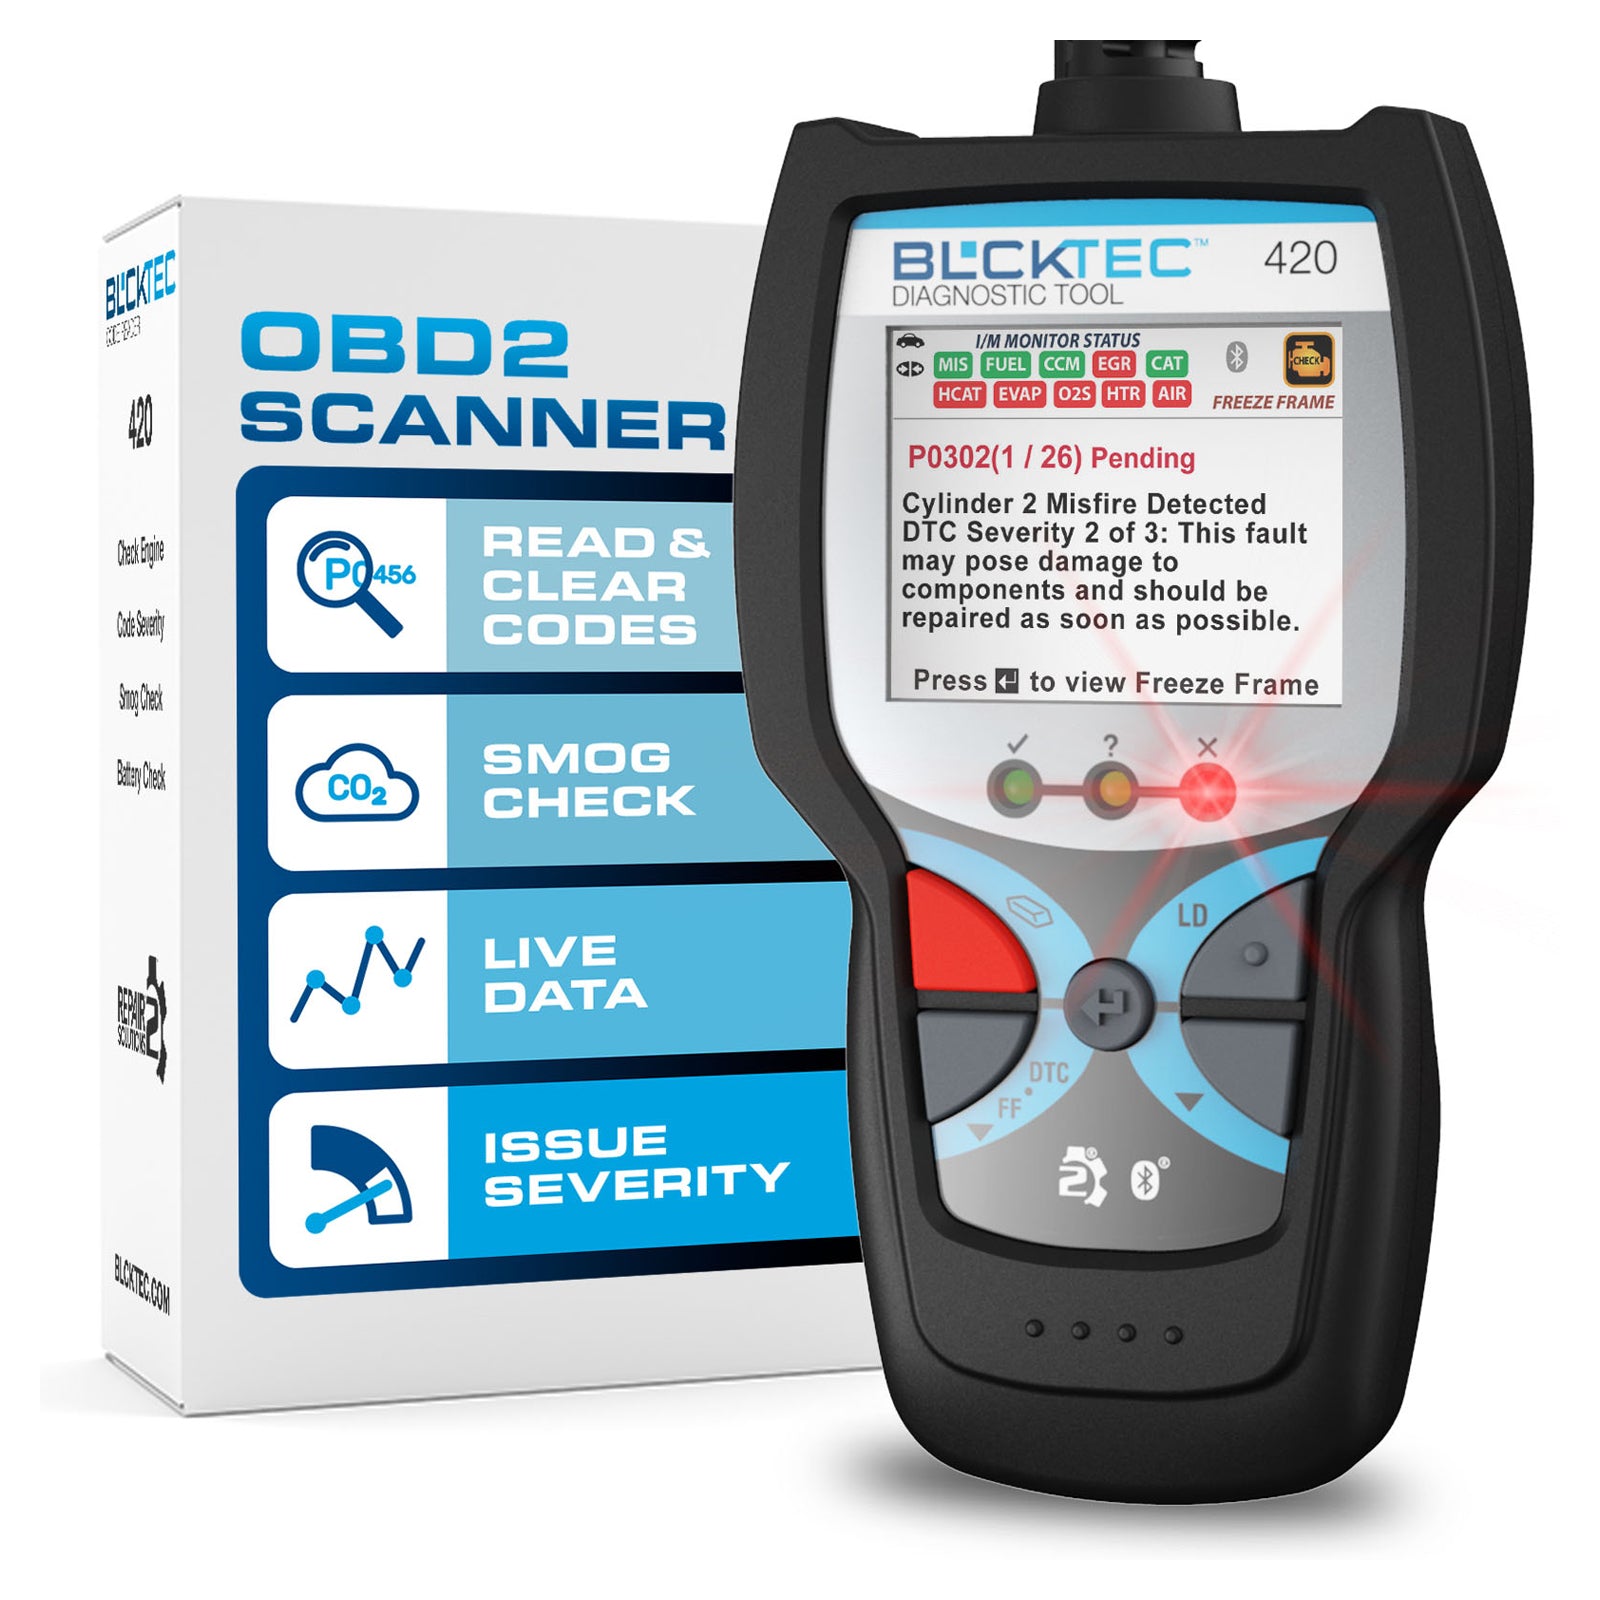 420 OBD2 Handheld Scanner  Decode & save thousands – BLCKTEC